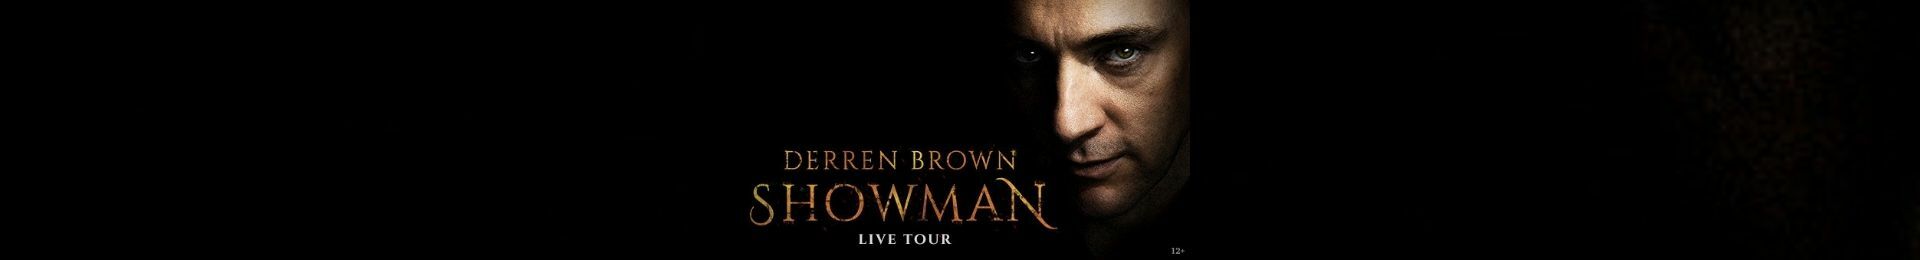 Derren Brown: Showman banner image